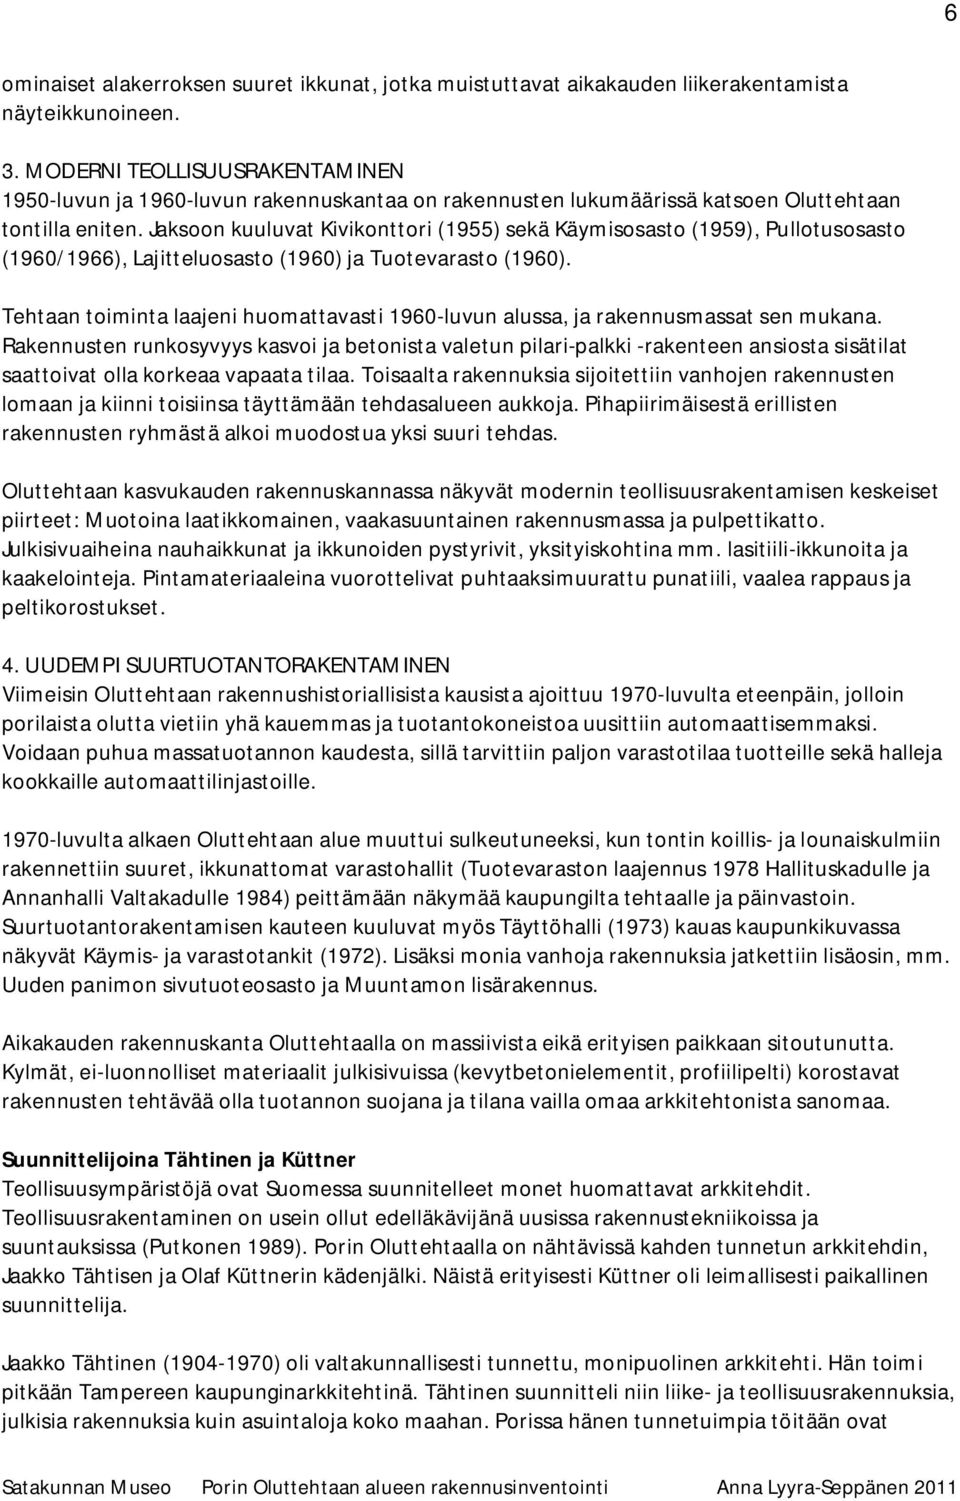 Jaksoon kuuluvat Kivikonttori (1955) sekä Käymisosasto (1959), Pullotusosasto (1960/1966), Lajitteluosasto (1960) ja Tuotevarasto (1960).